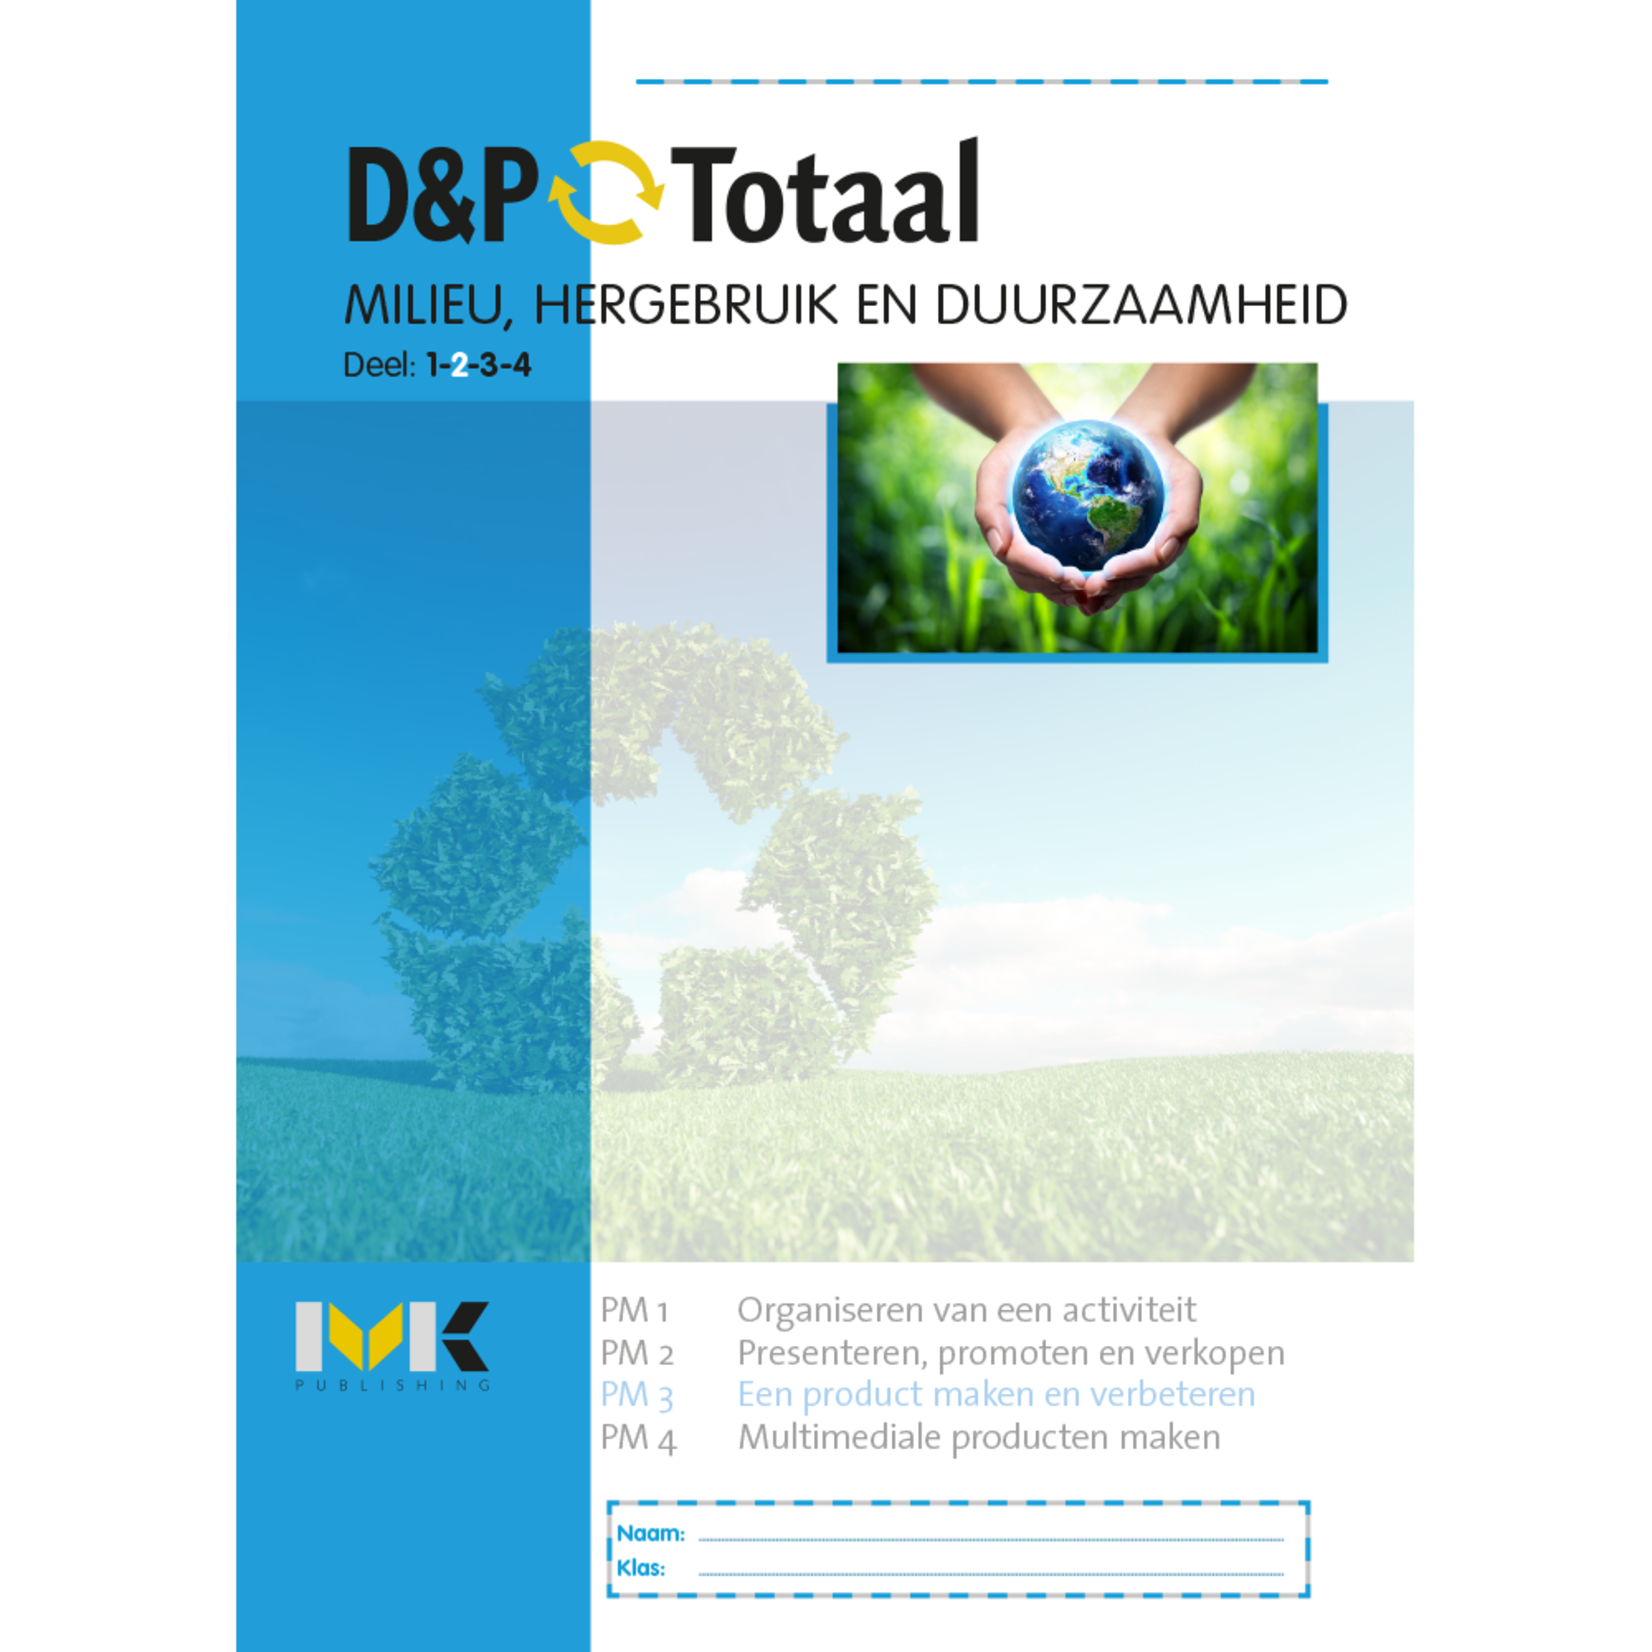 D&P-Totaal - D&P Milieu, hergebruik en duurzaamheid (PM3/1914)